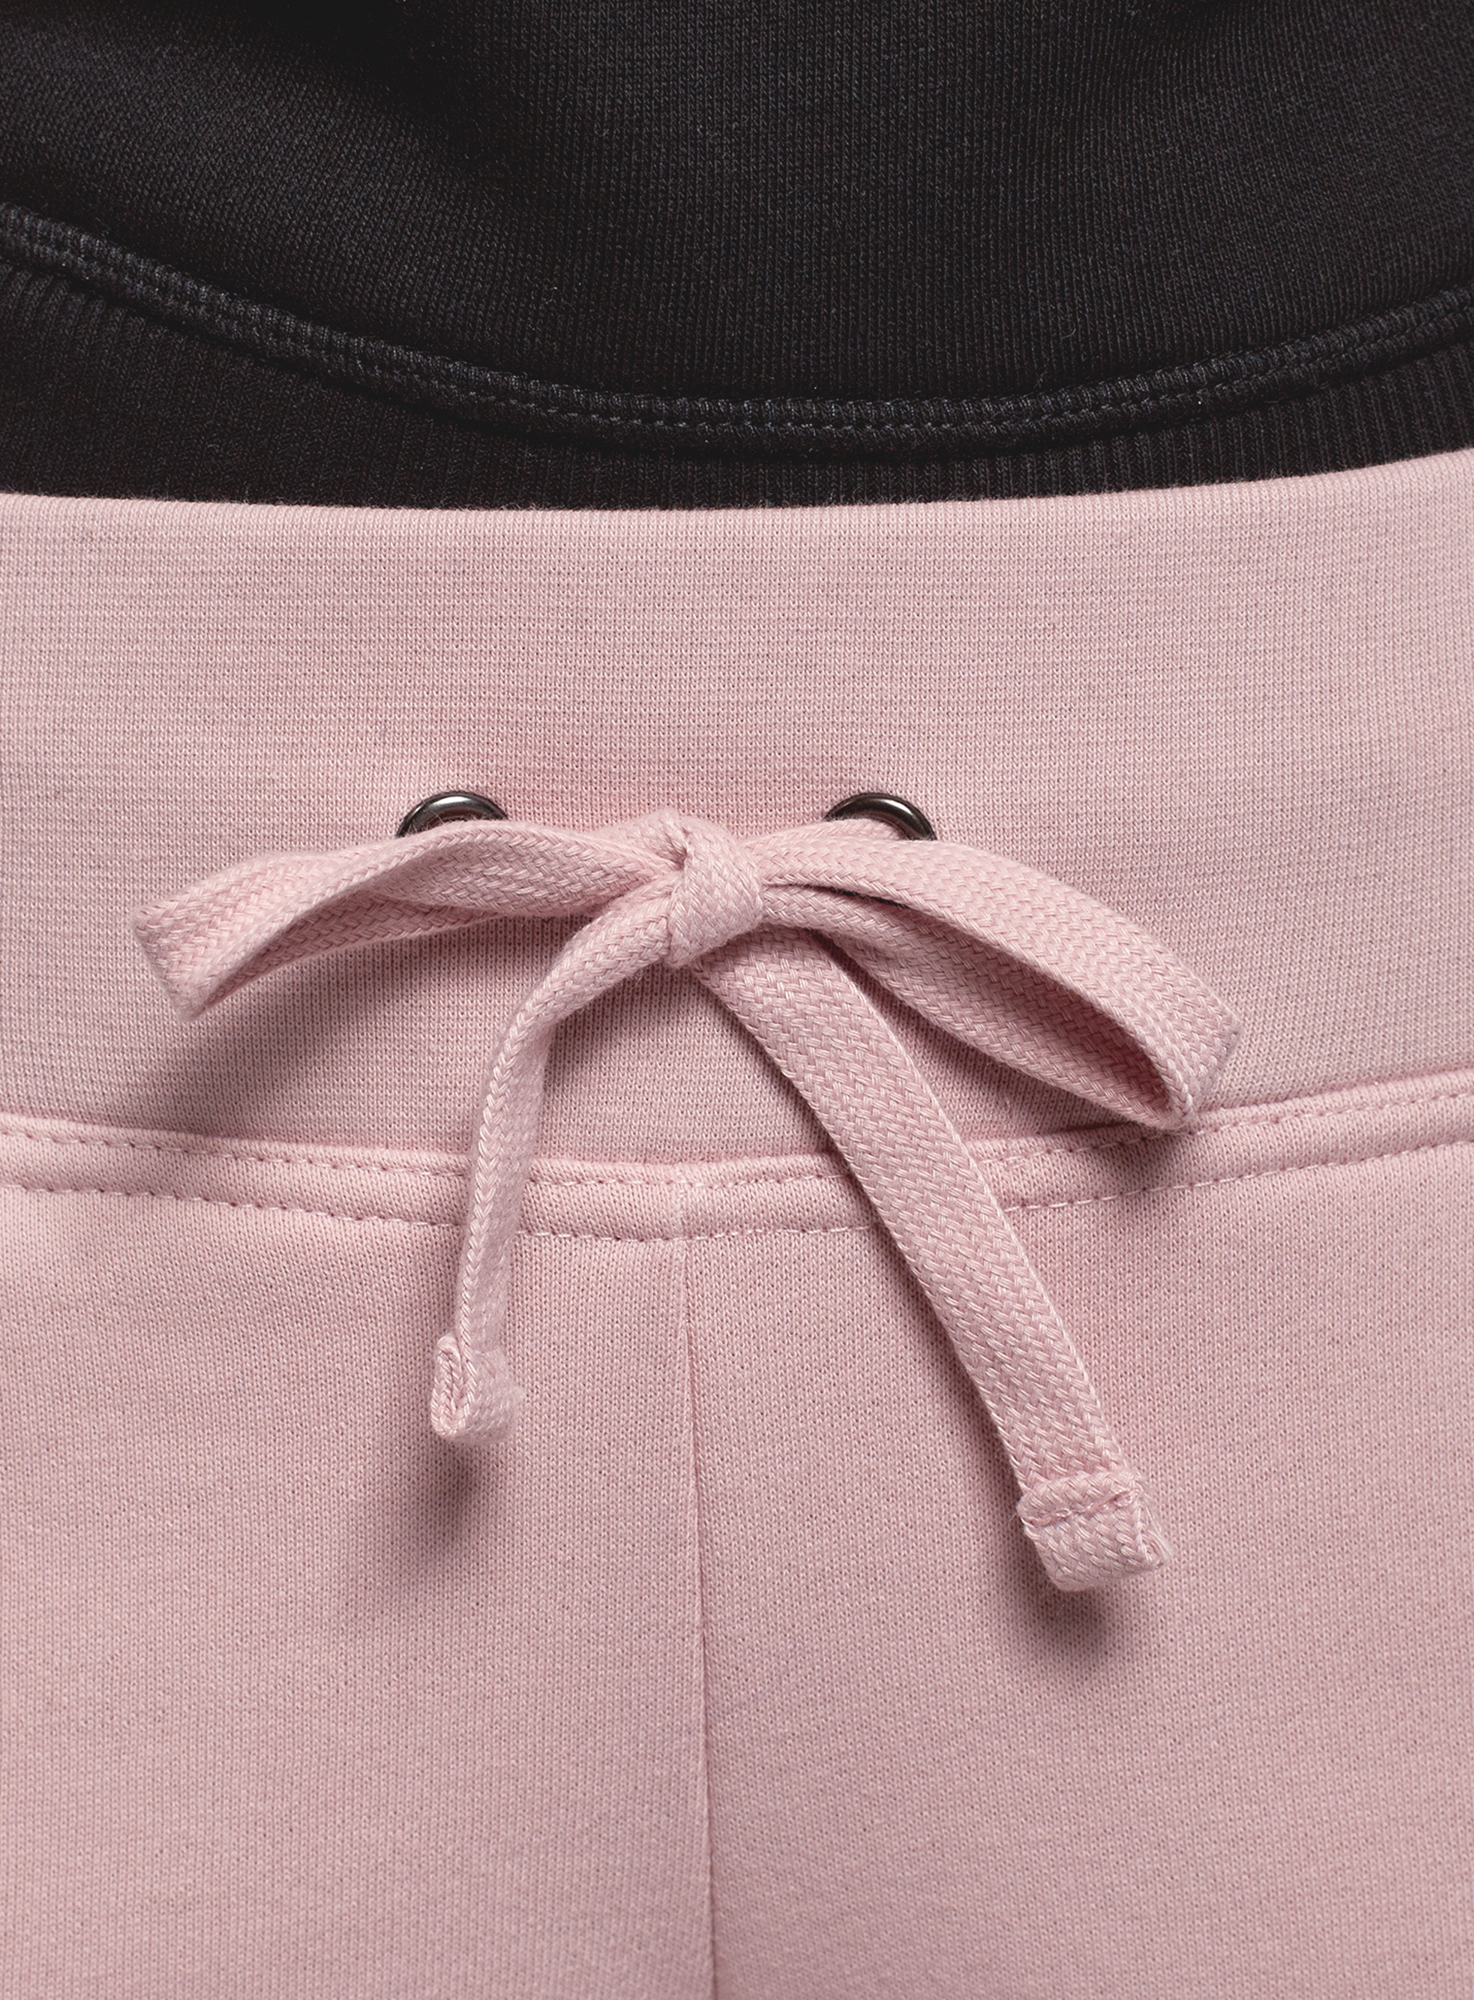 Спортивные брюки женские oodji 16700030-25B розовые M